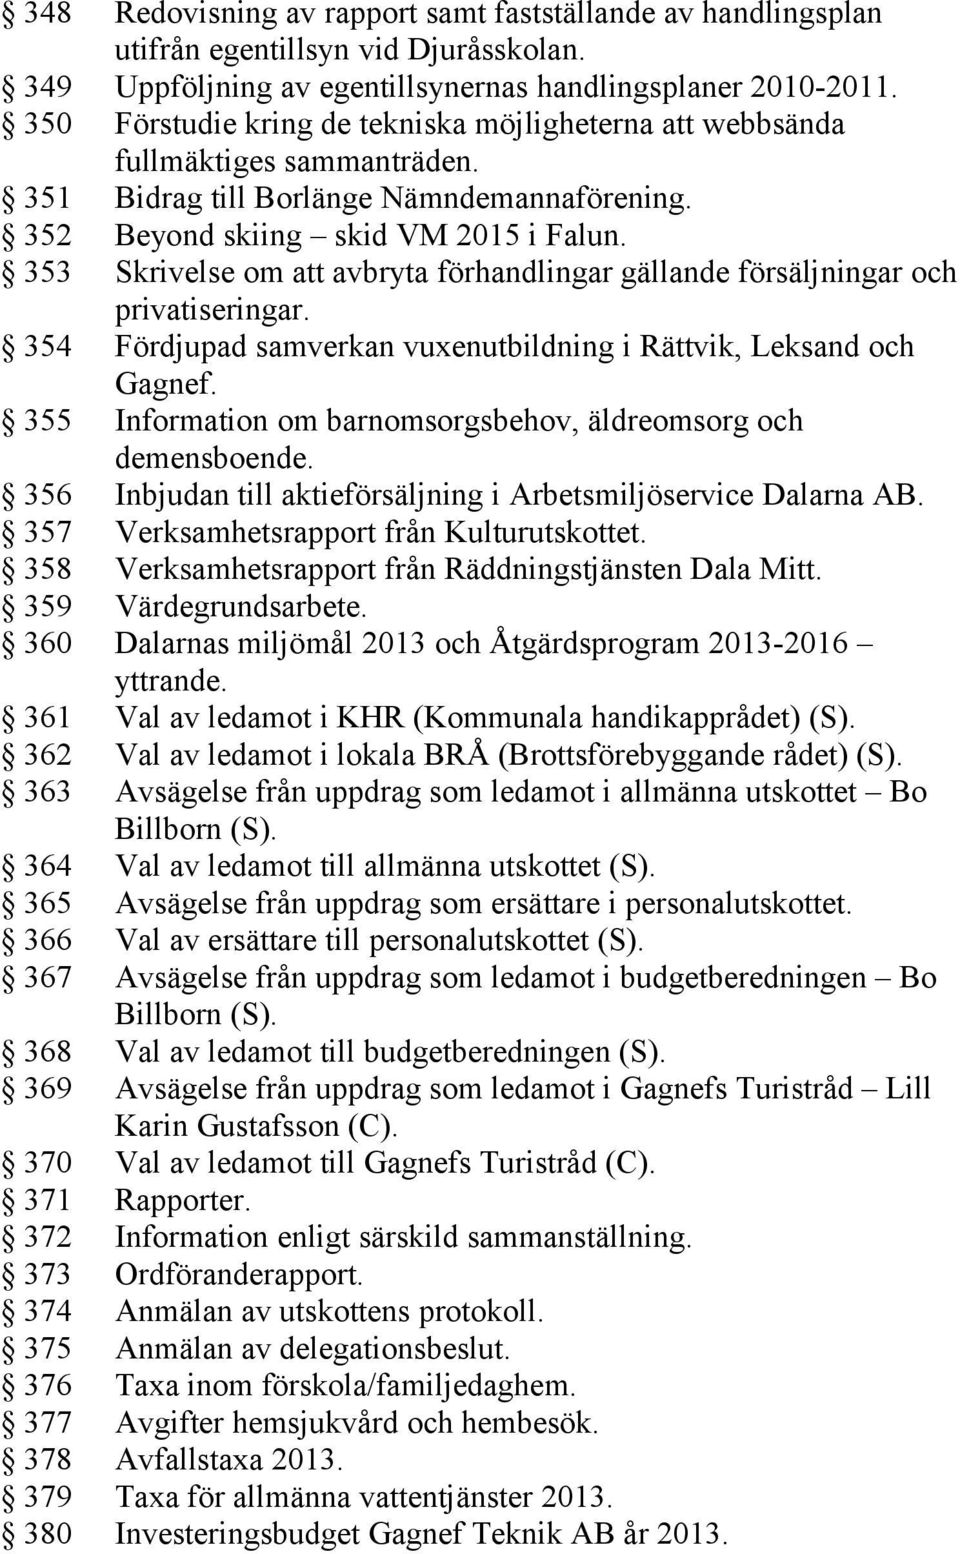 353 Skrivelse om att avbryta förhandlingar gällande försäljningar och privatiseringar. 354 Fördjupad samverkan vuxenutbildning i Rättvik, Leksand och Gagnef.